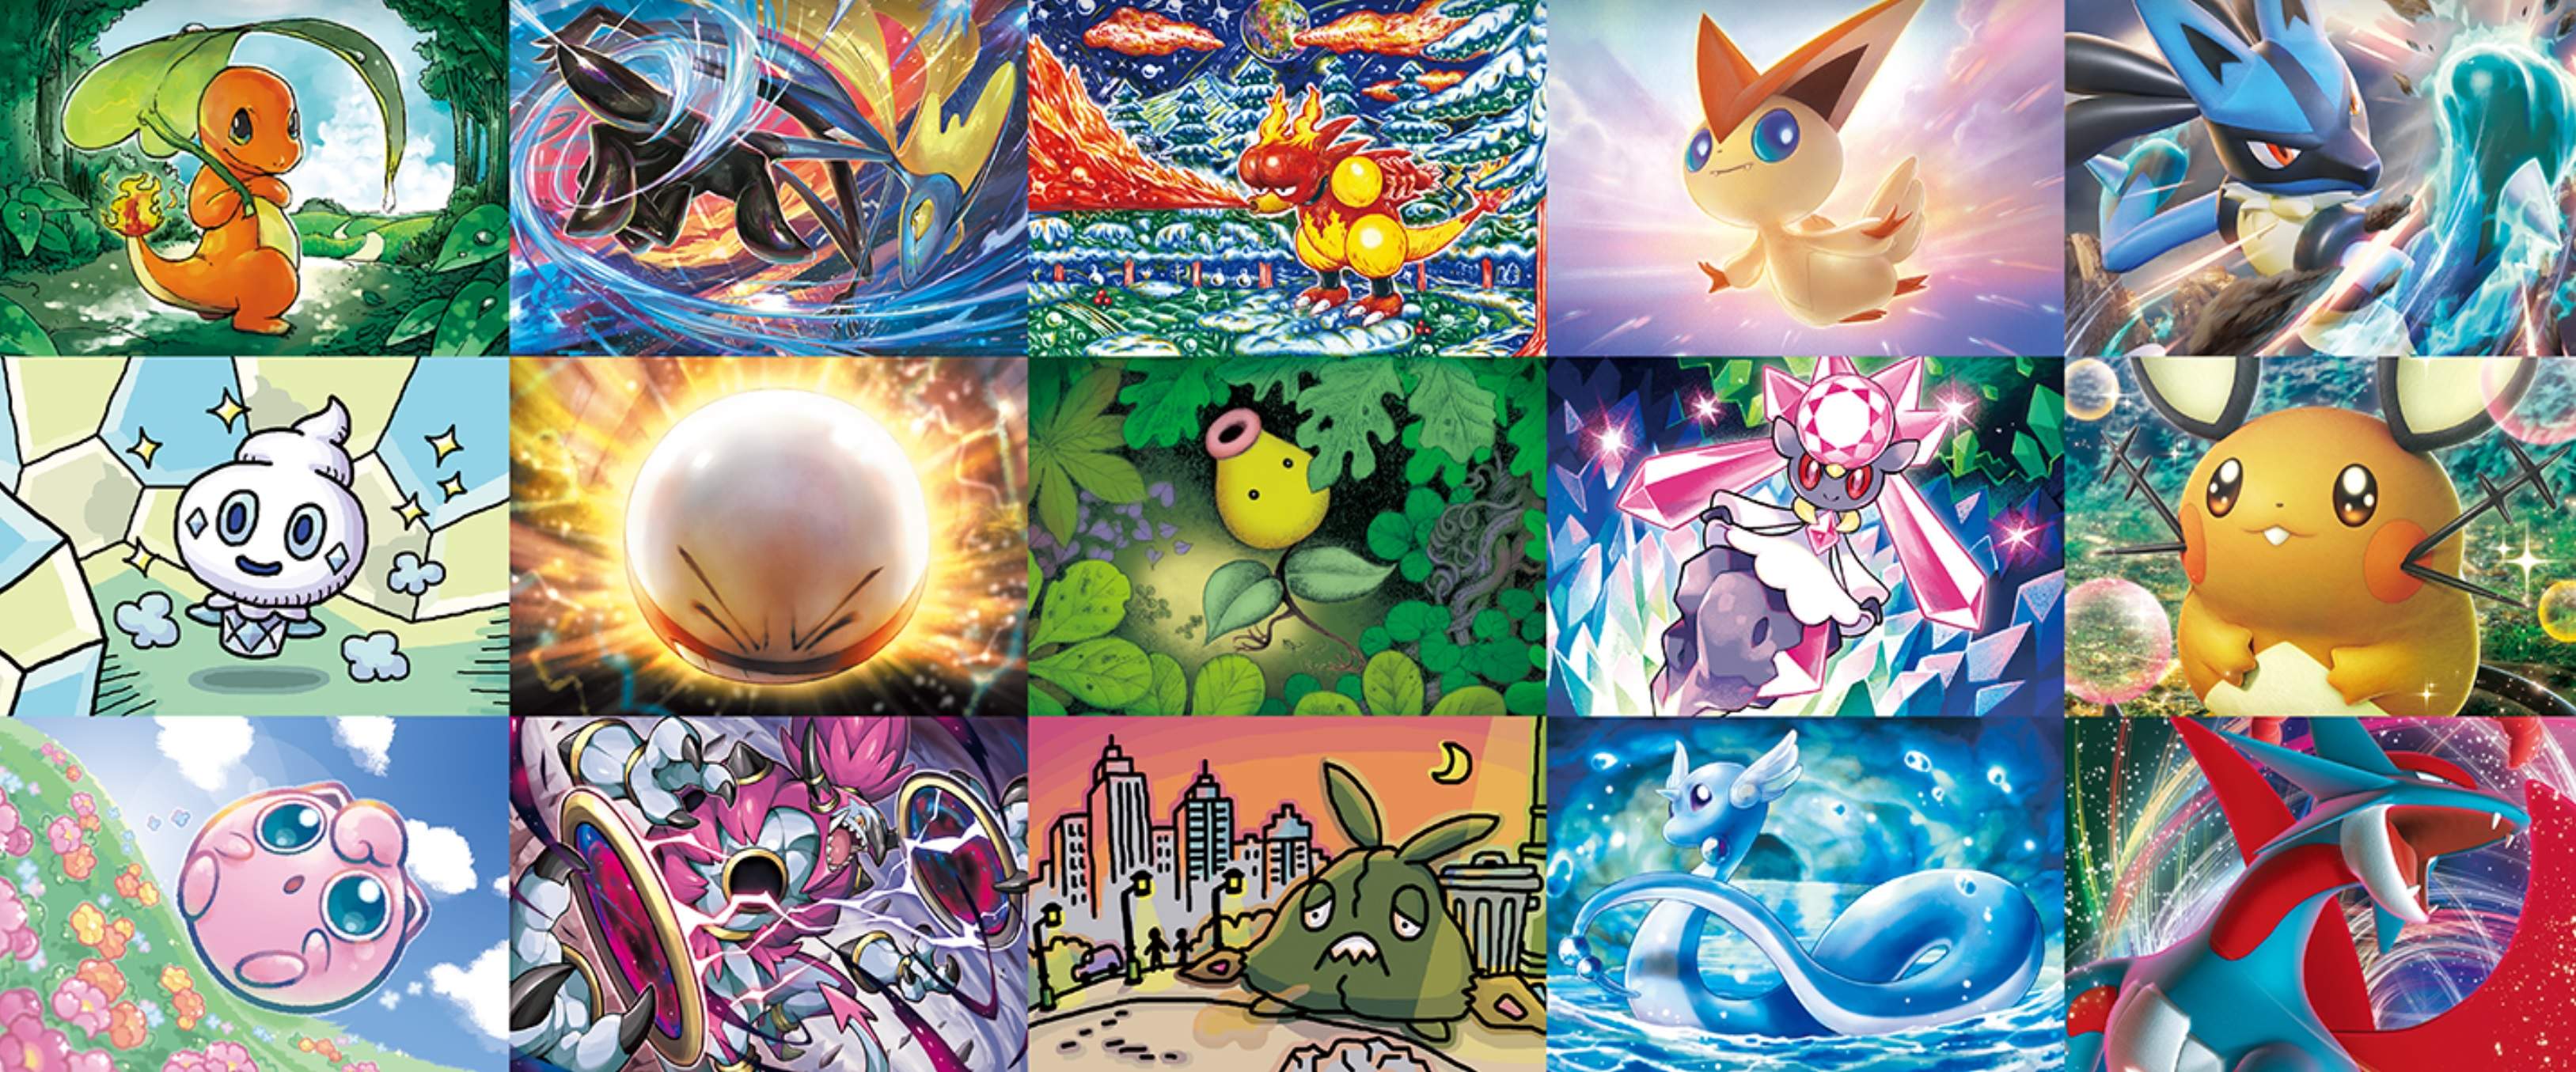 Il 10 agosto arriva la prima mostra online del Gioco di Carte Collezionabili Pokémon